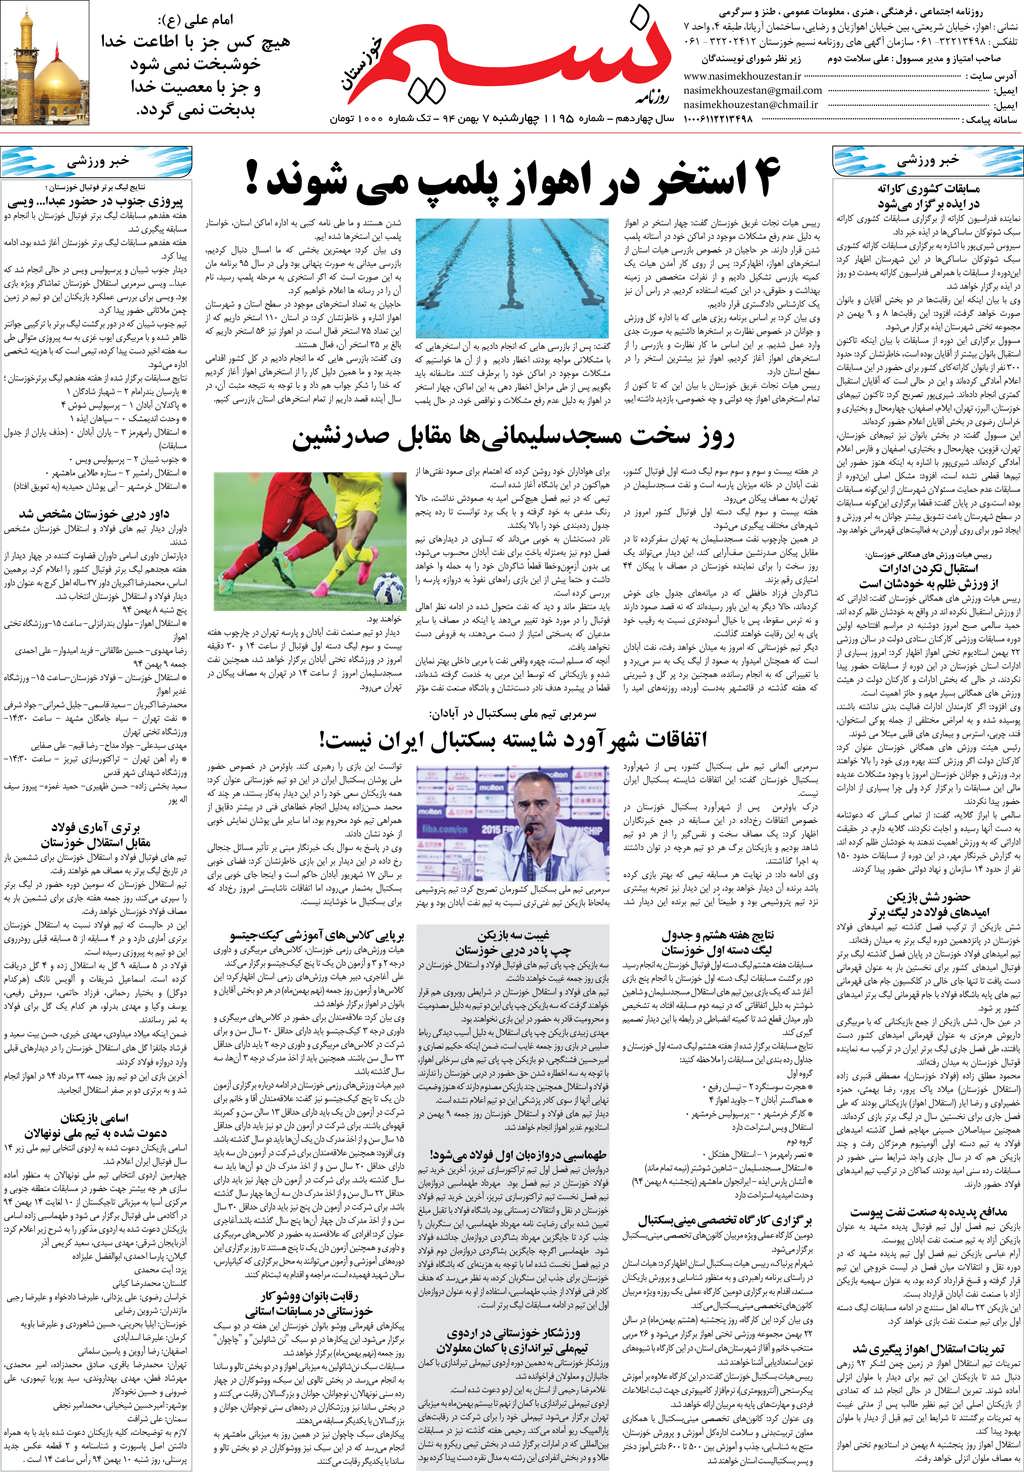 صفحه آخر روزنامه نسیم شماره 1195